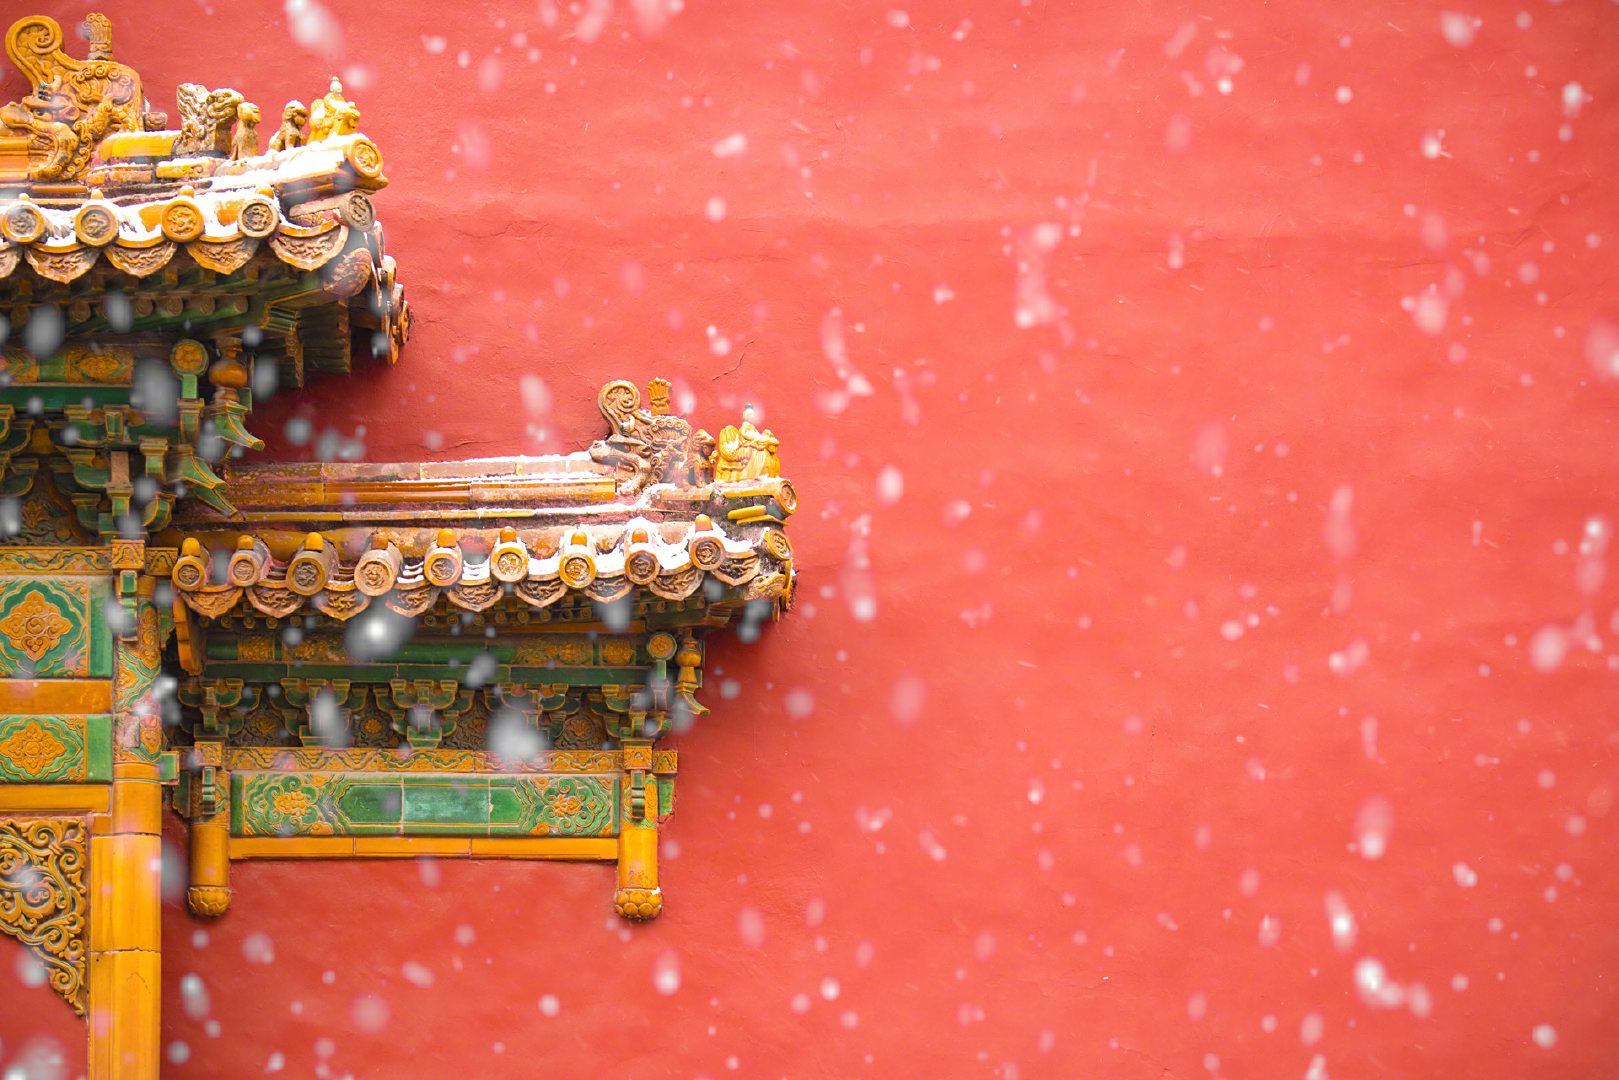 故宫红墙雪景真的是太美了